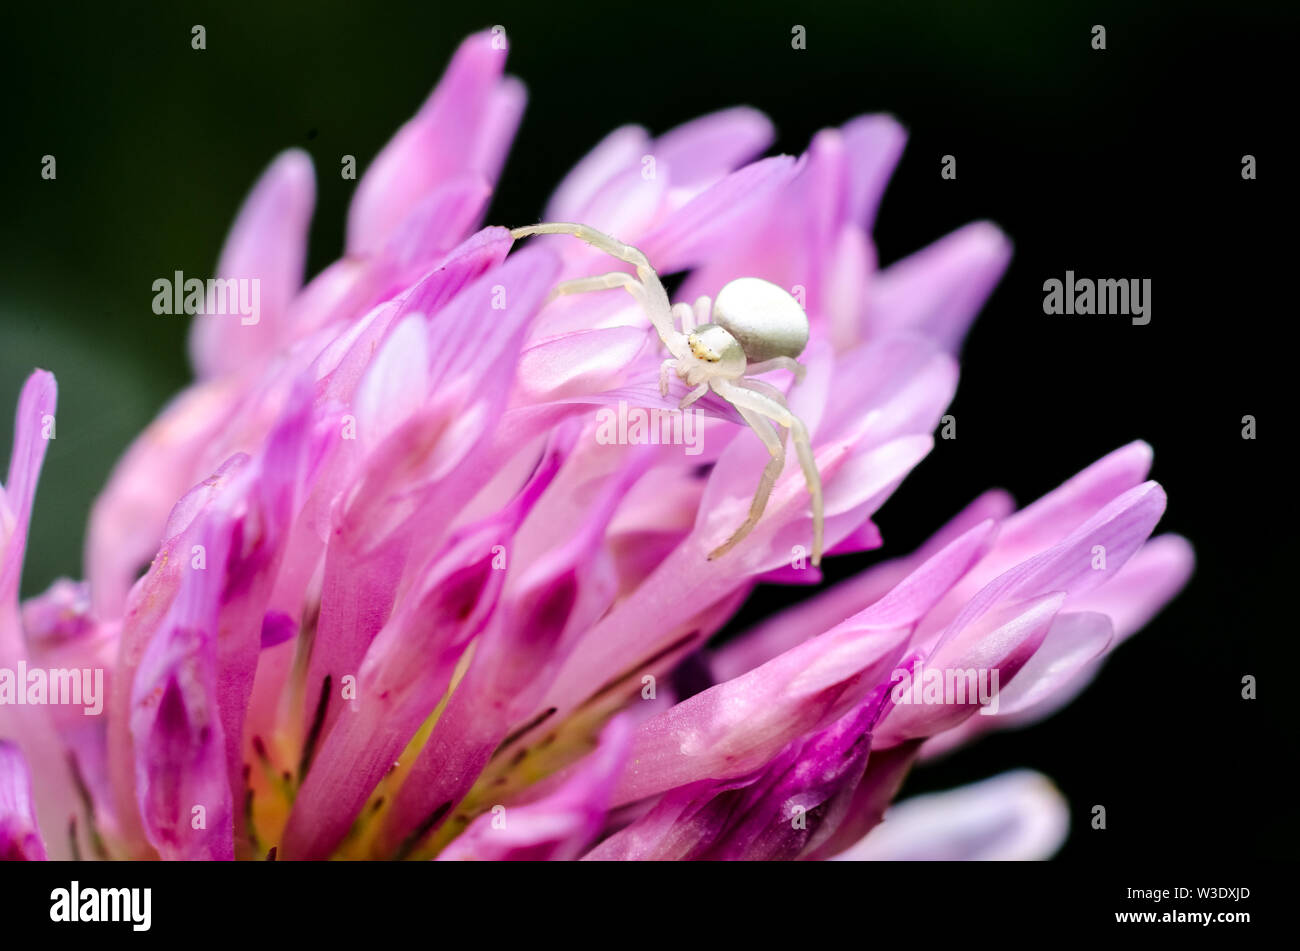 Thomisidae, Macro Fotografía de un pequeño cangrejo araña en una flor morada Foto de stock